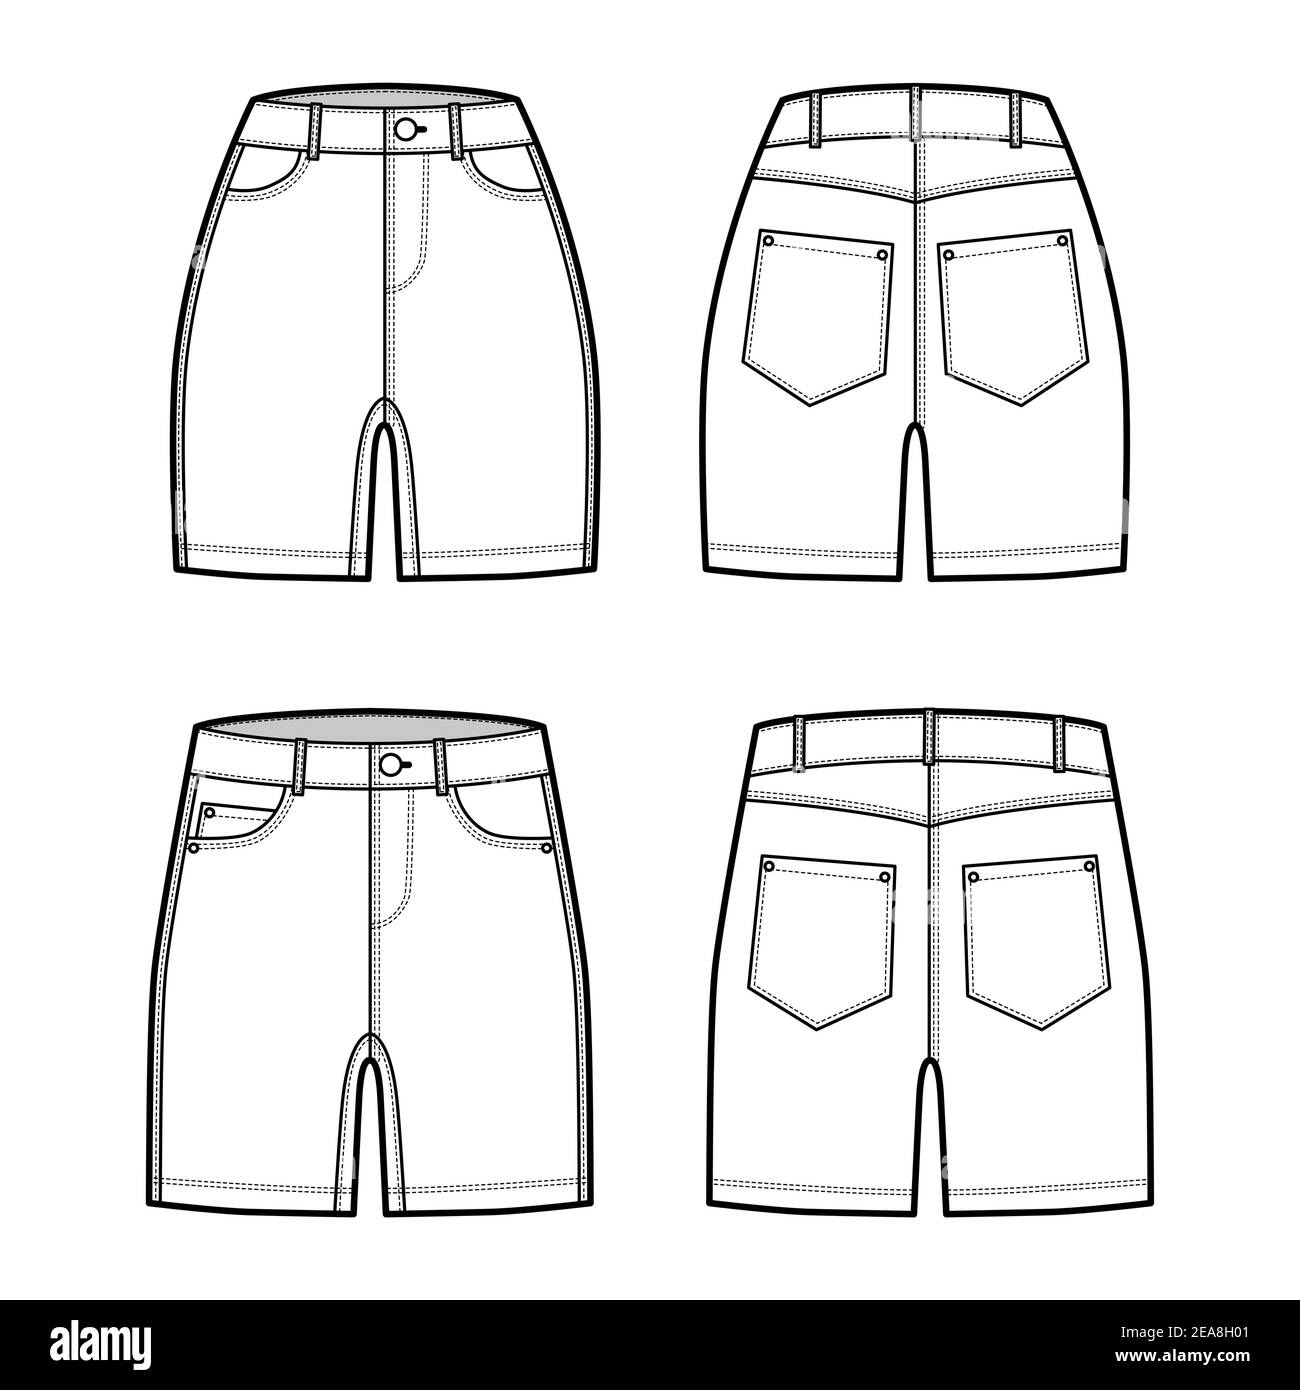 Ensemble de shorts en denim pantalon illustration technique de la mode avec  longueur mi-cuisse, taille normale basse, taille haute basse, 5 poches.  Modèle à fond plat à l'avant, à l'arrière, de couleur